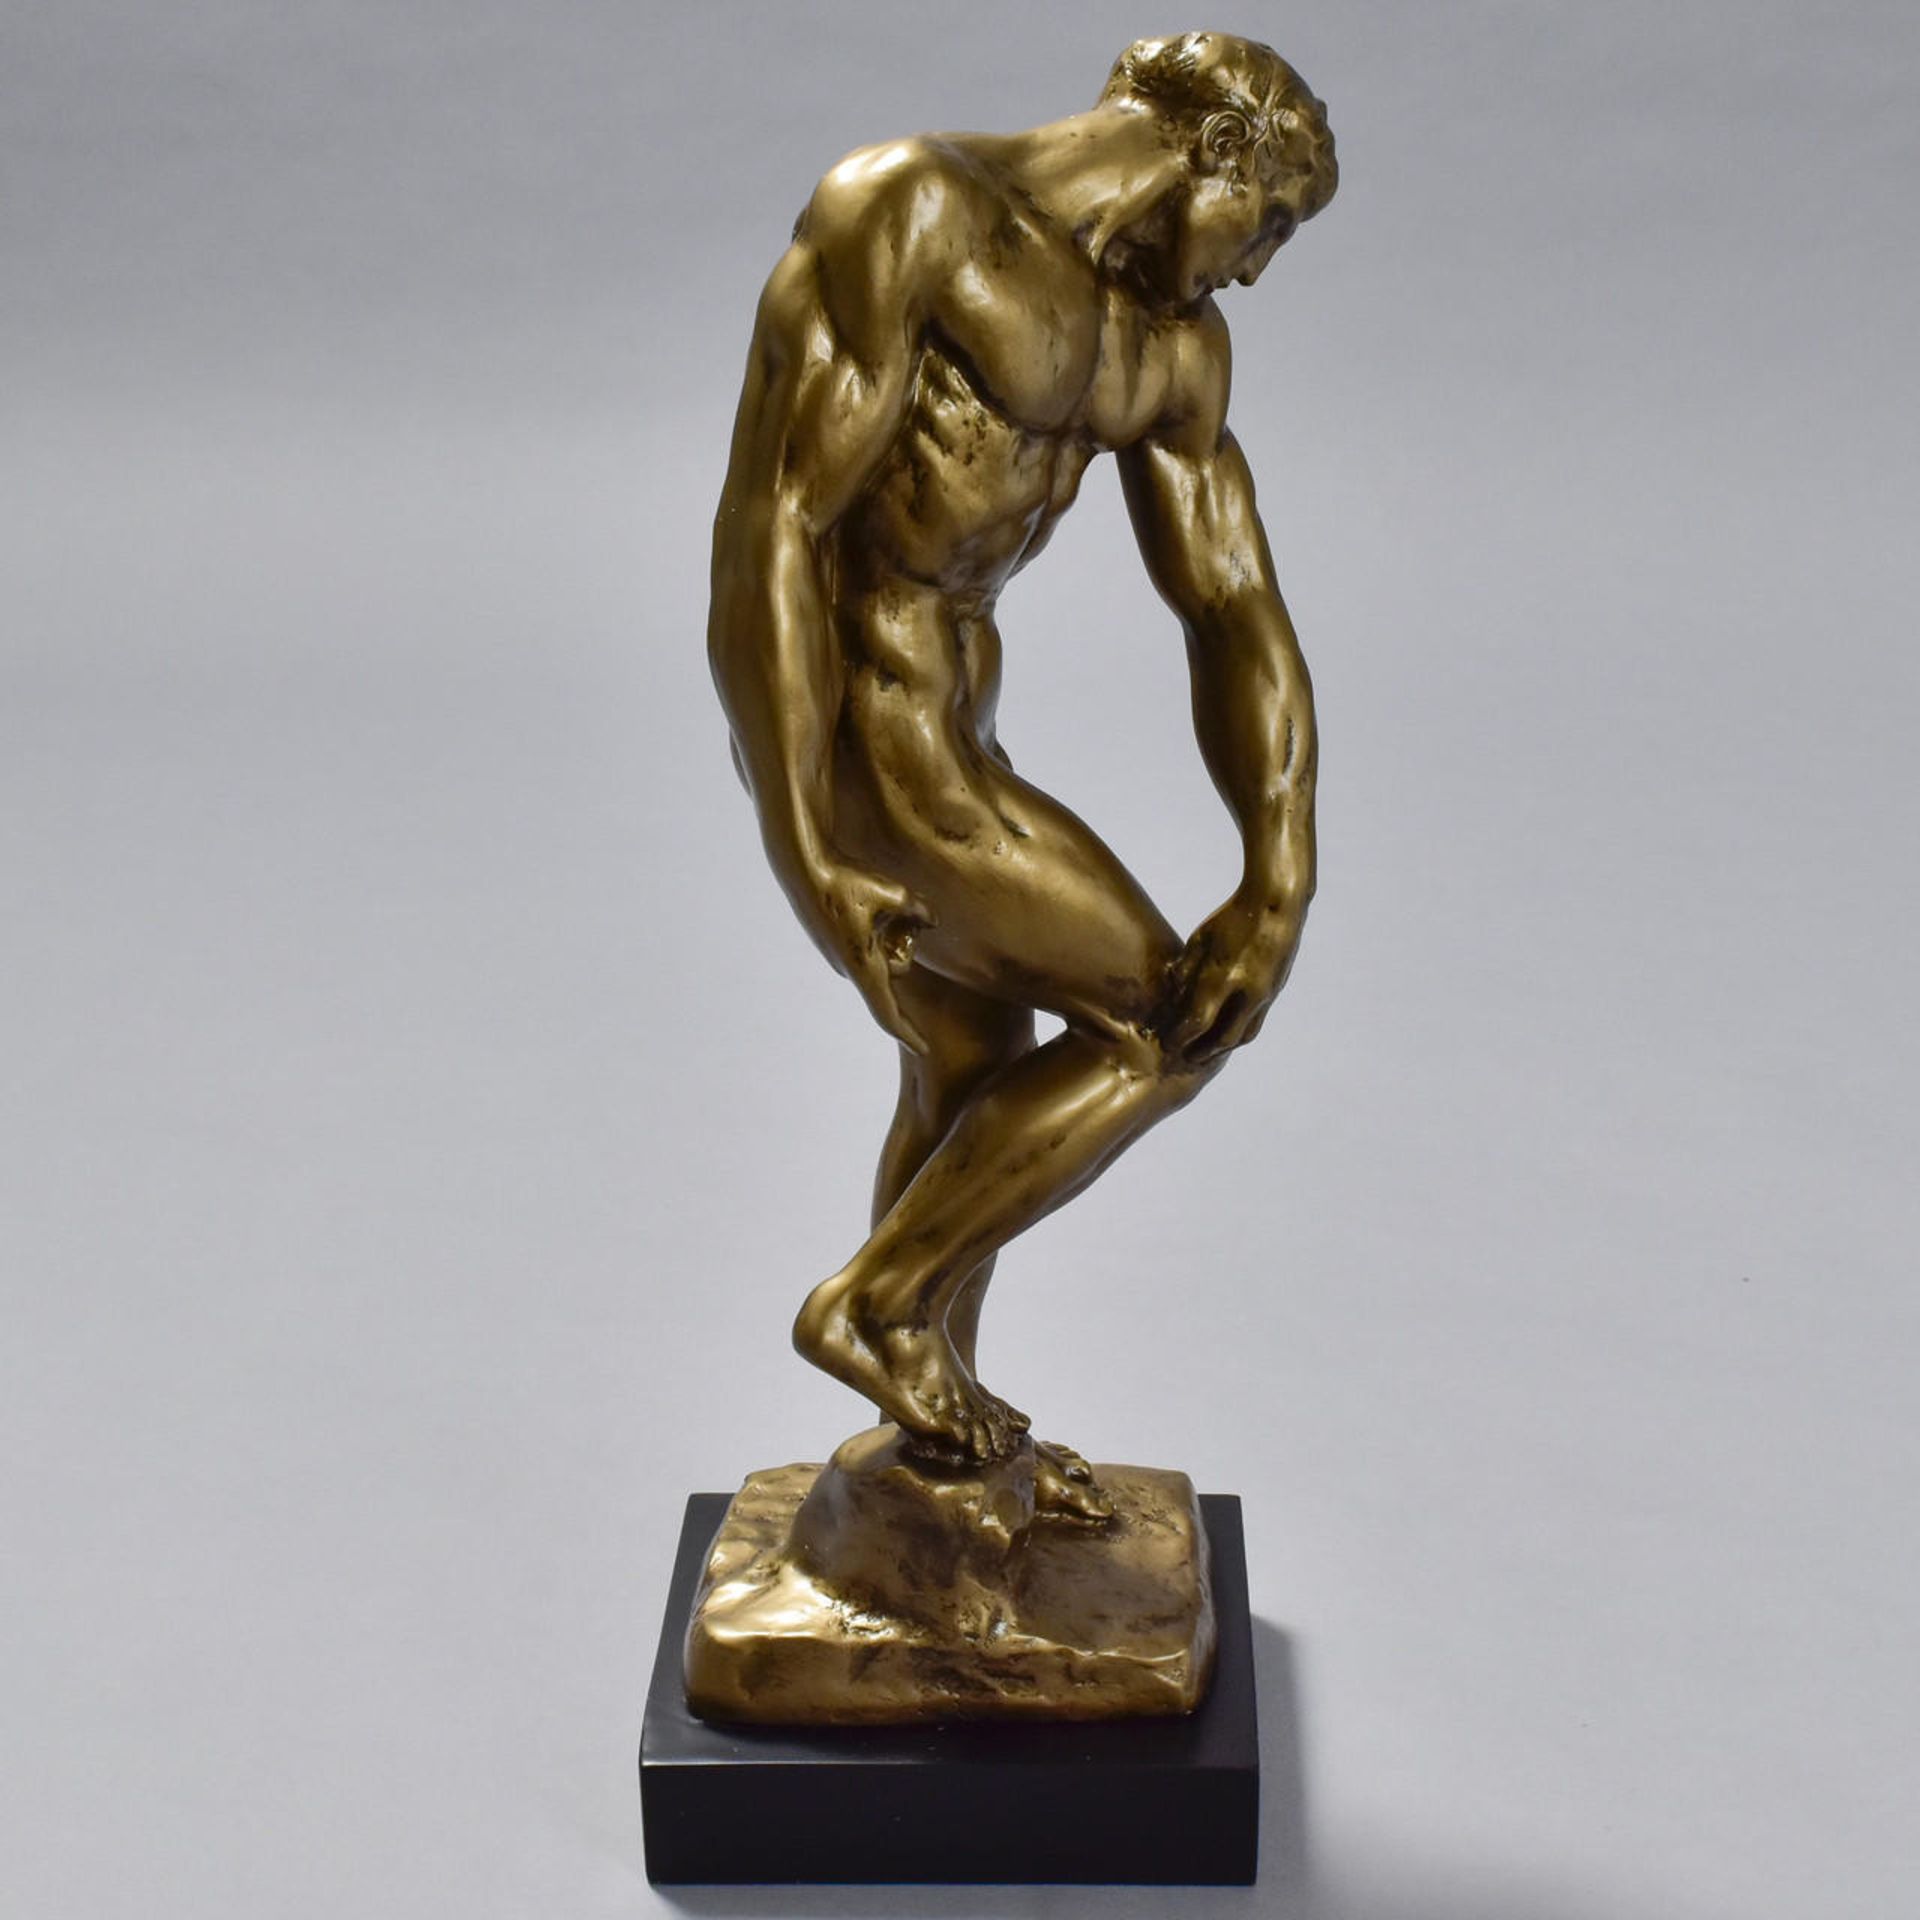 Auguste Rodin "Adam" Sculpture - Image 3 of 5